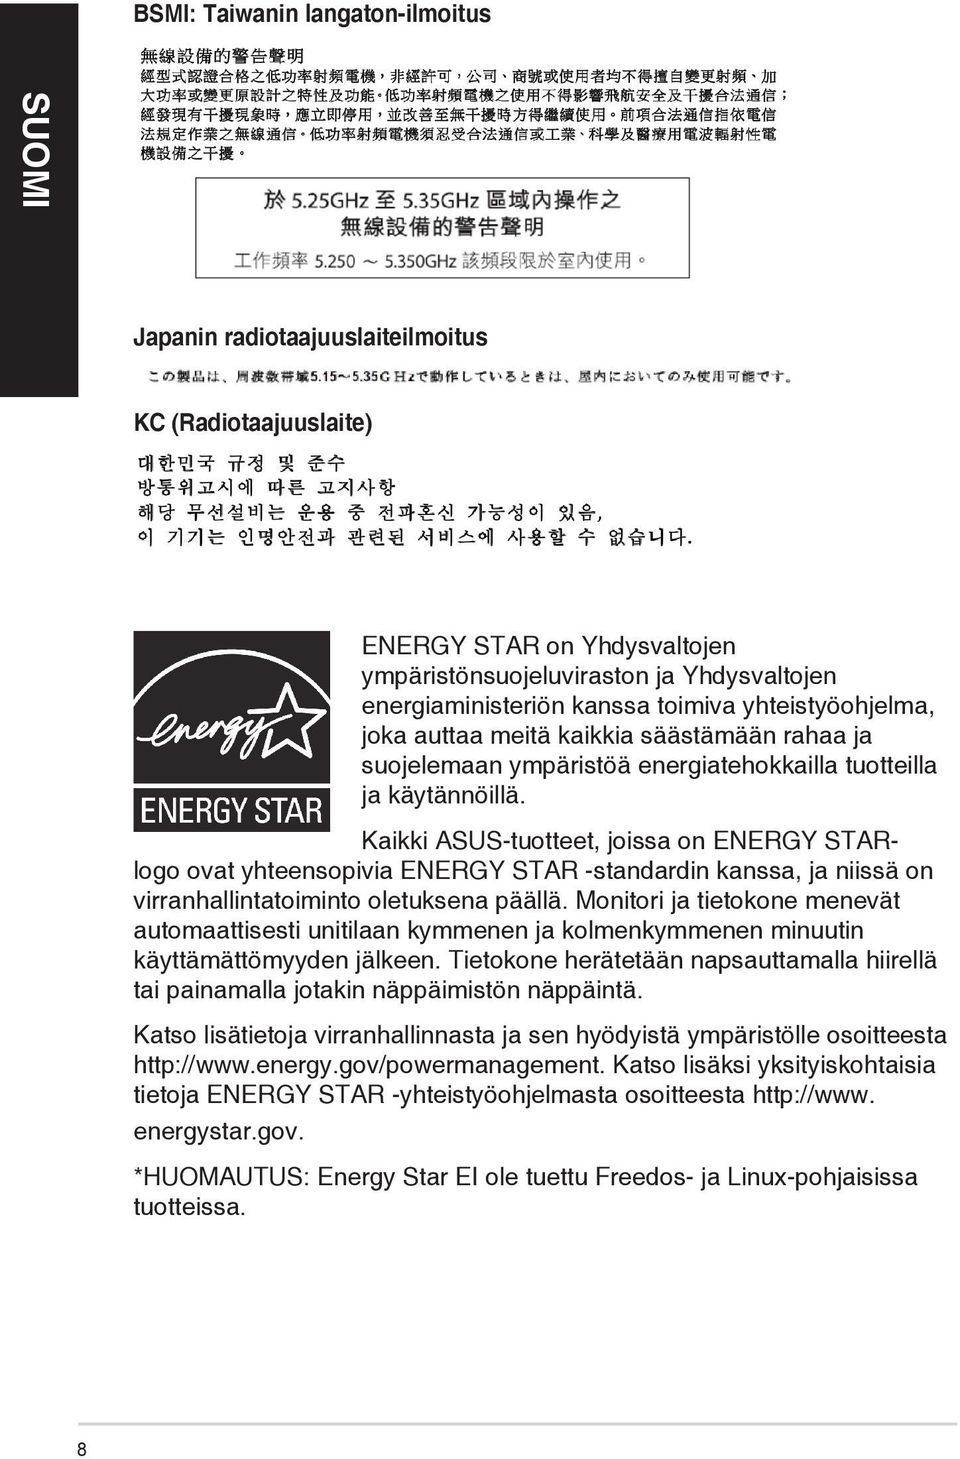 Kaikki ASUS-tuotteet, joissa on ENERGY STARlogo ovat yhteensopivia ENERGY STAR -standardin kanssa, ja niissä on virranhallintatoiminto oletuksena päällä.